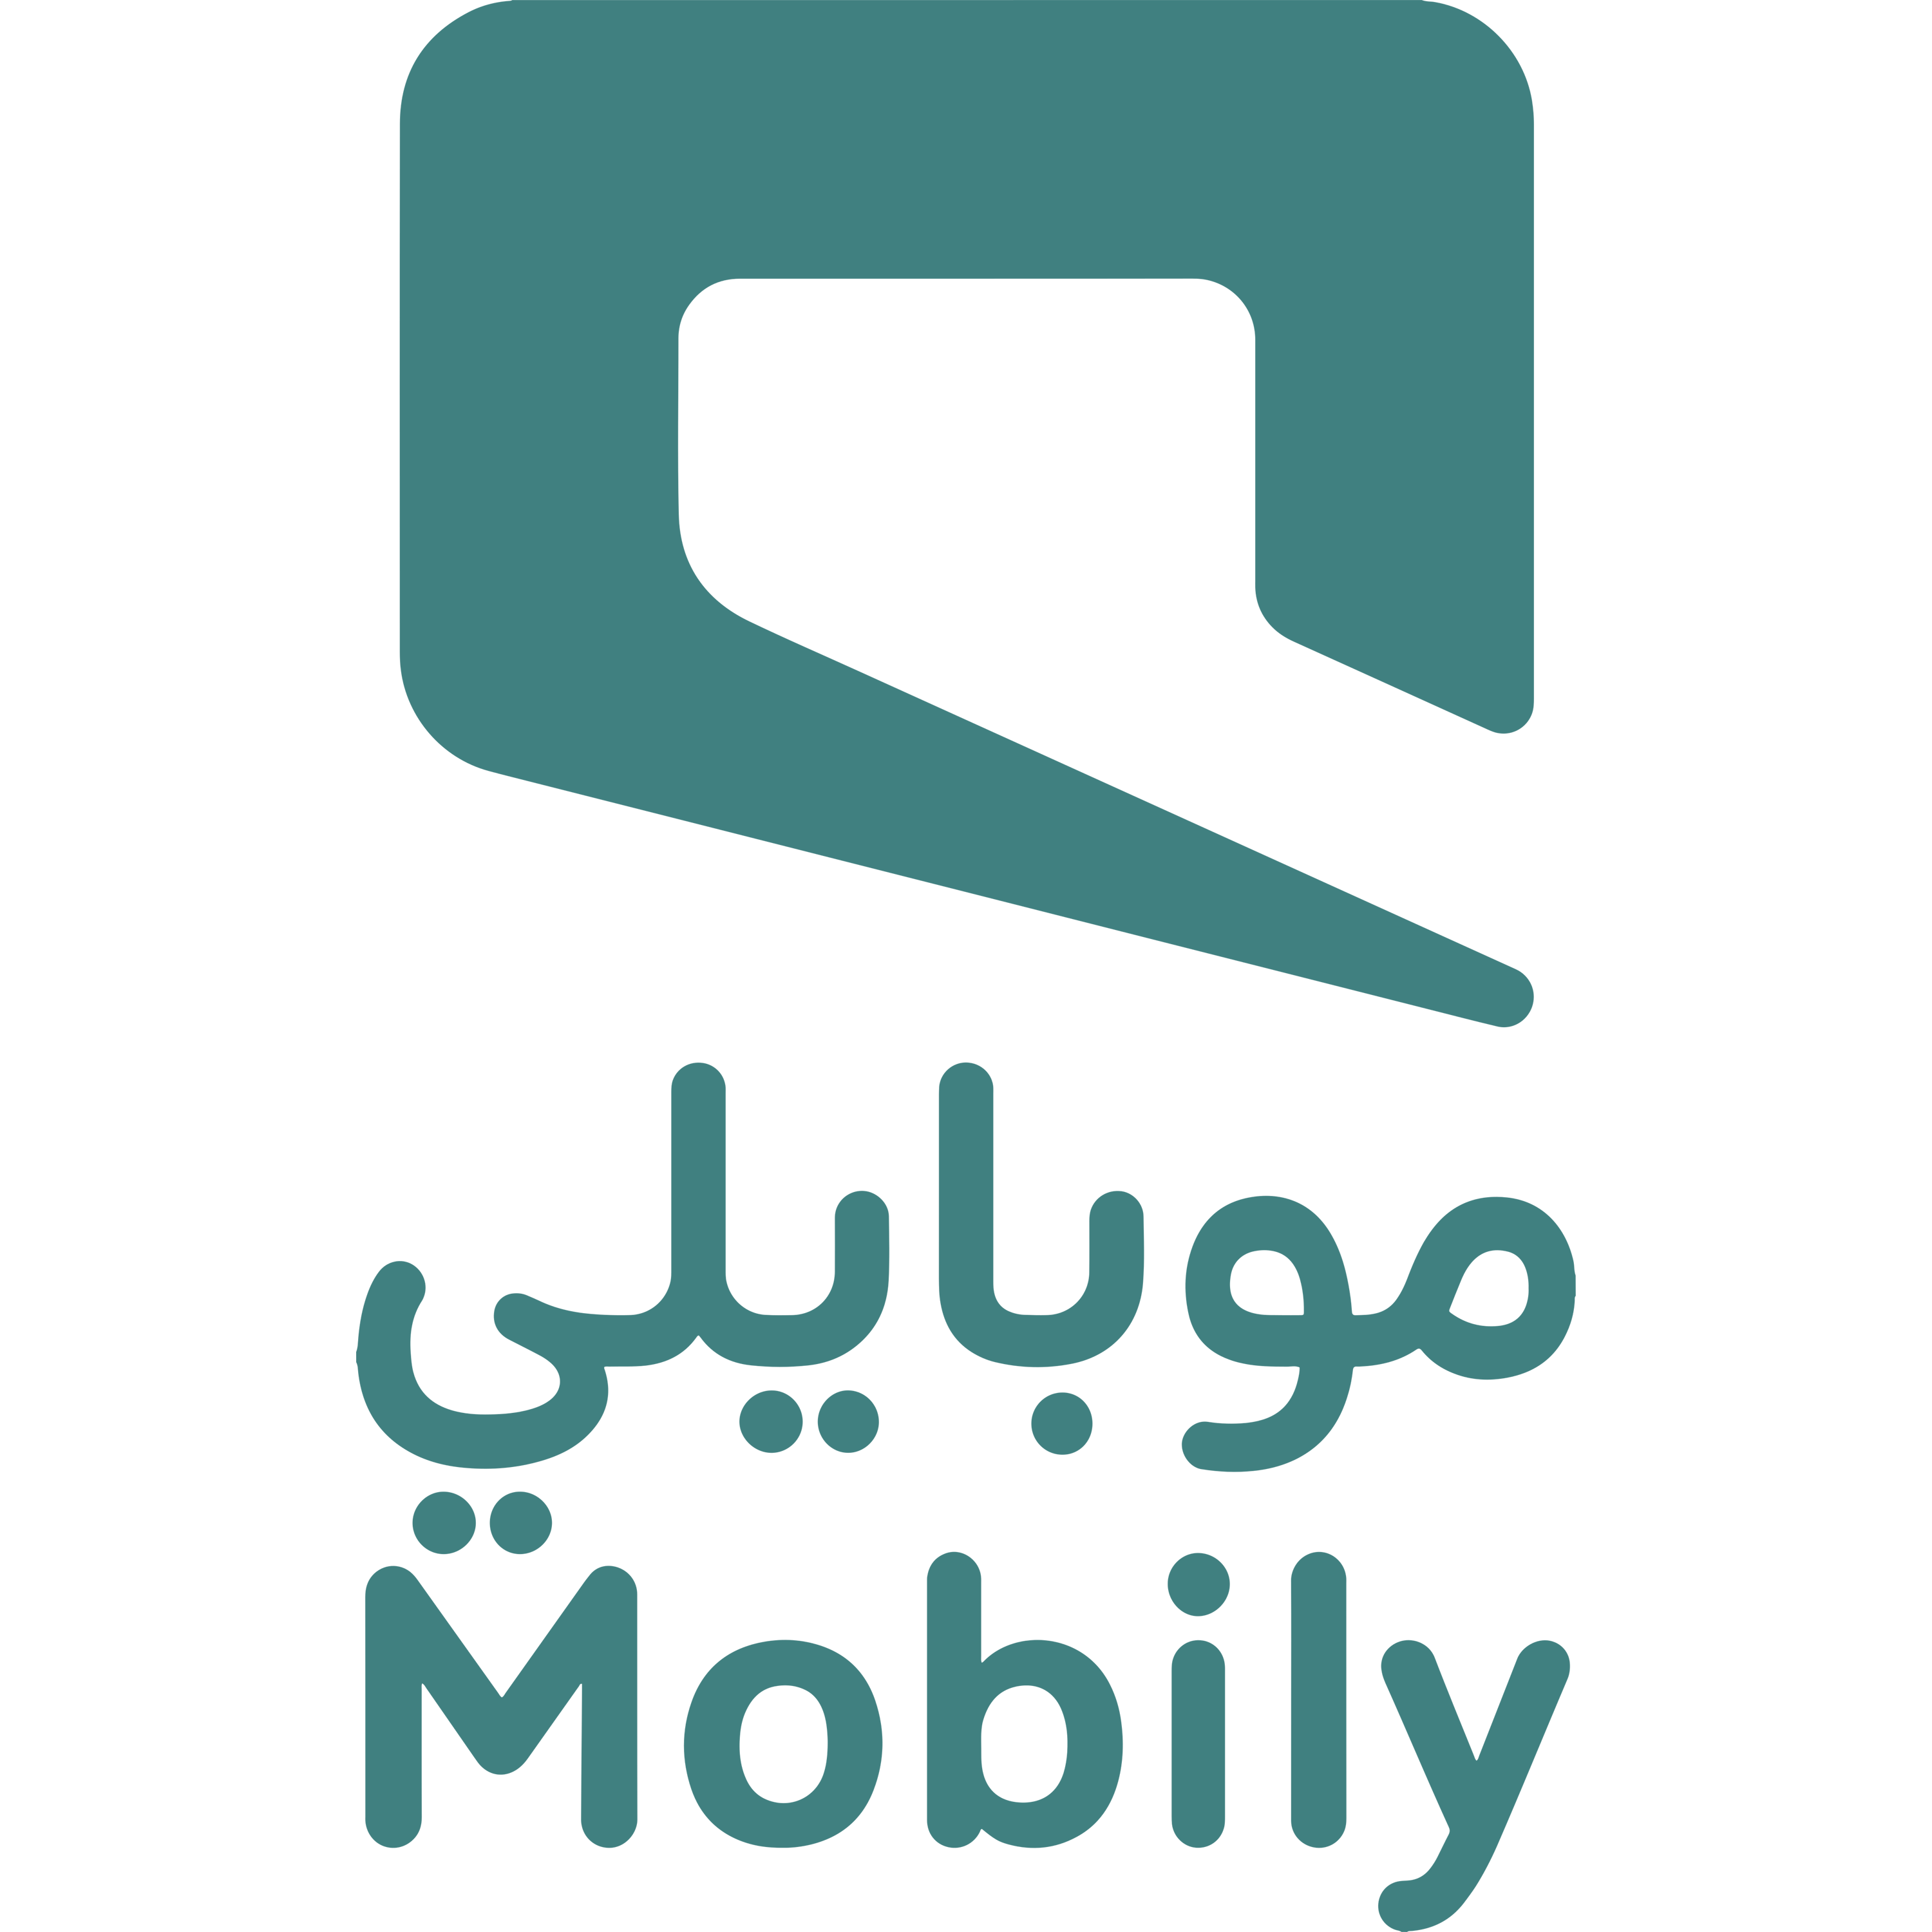 Mobily Logo  Transparent Clipart